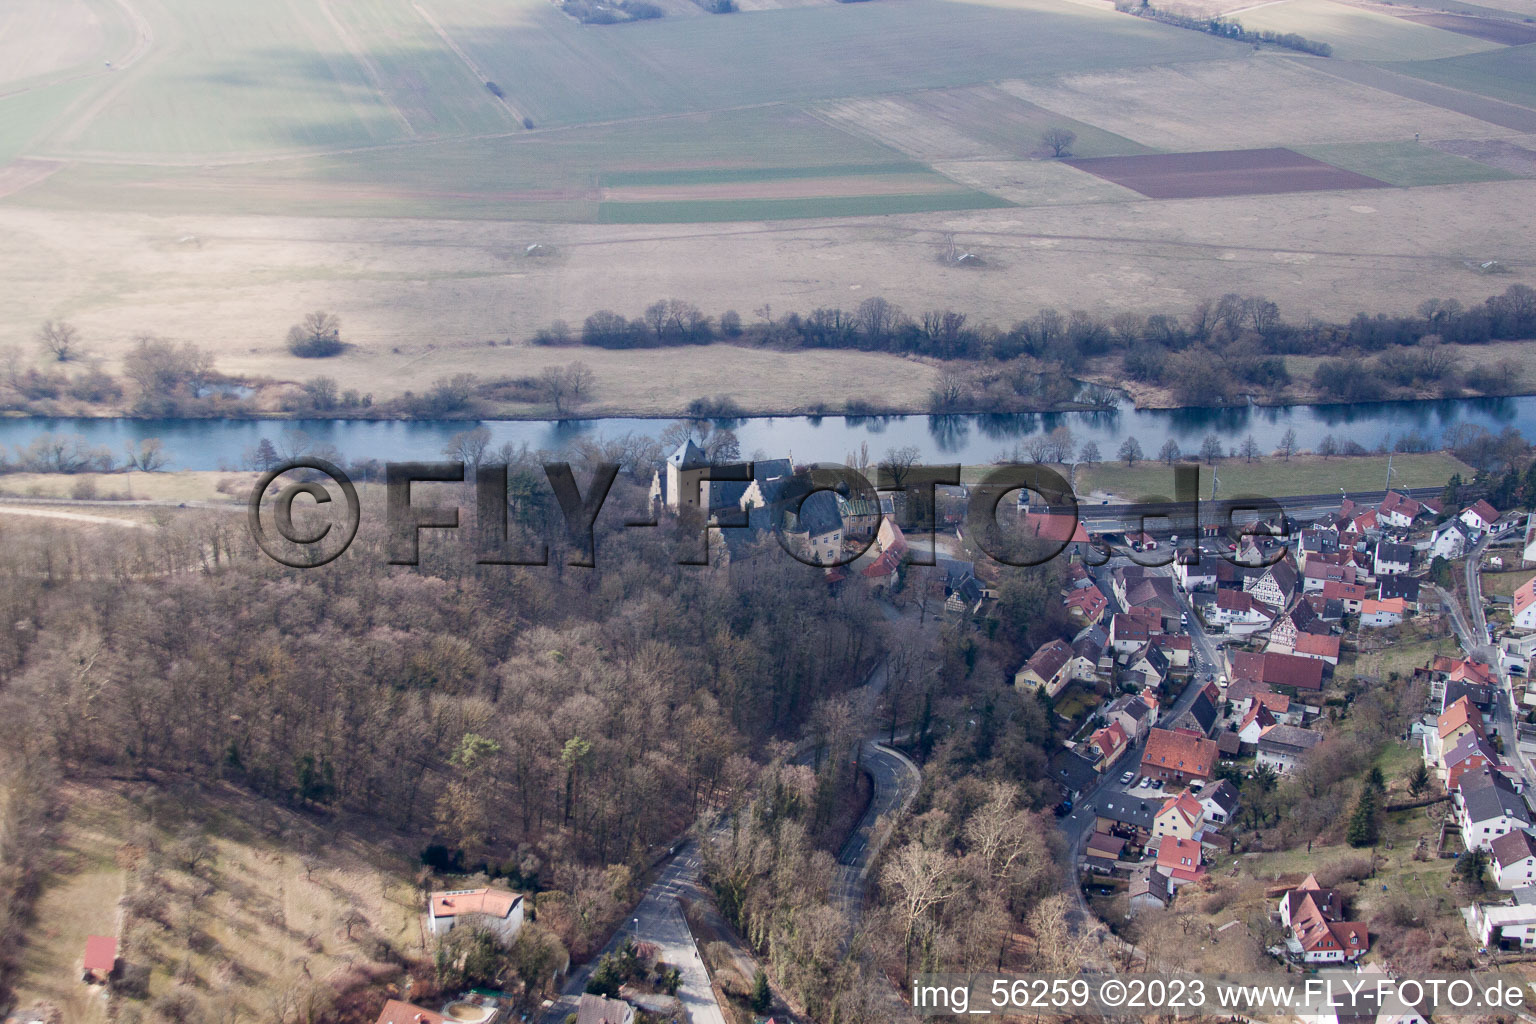 Luftbild von Schonungen im Bundesland Bayern, Deutschland